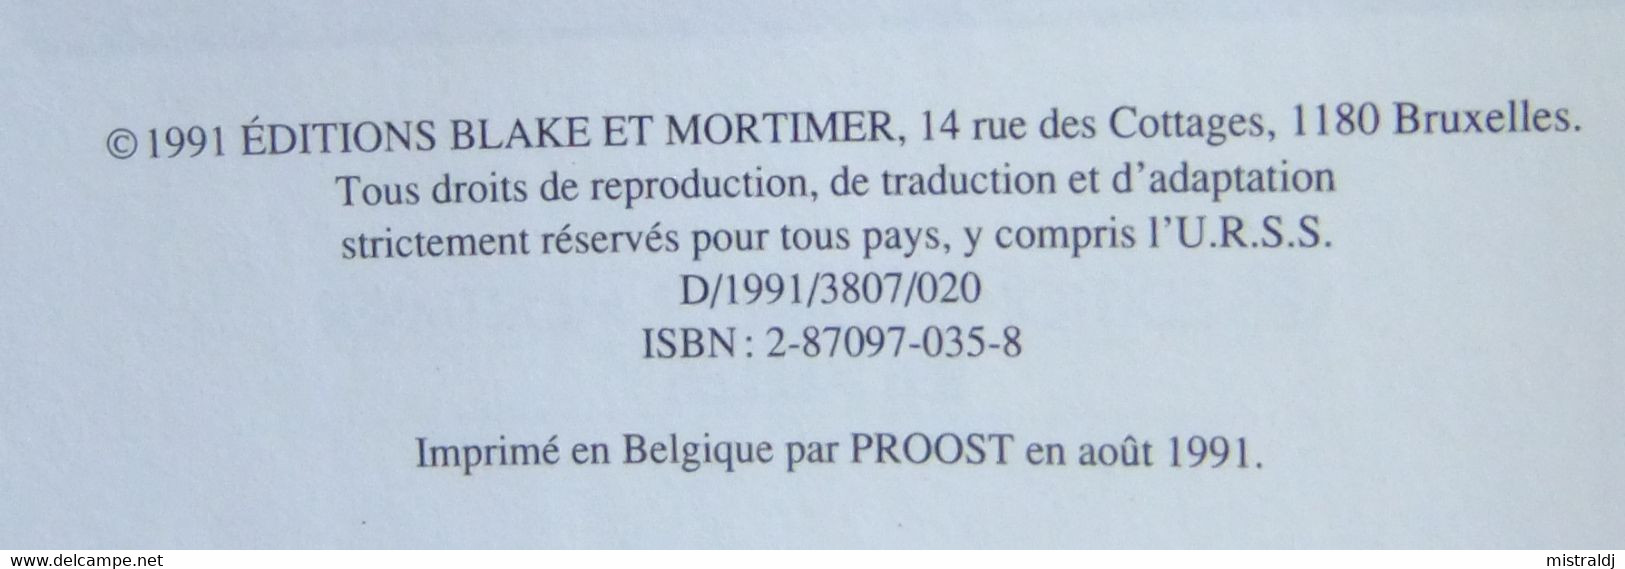 Blake Et Mortimer L’Enigme De L’Atlantide, Premier Tirage Des Editions B. Et Mortimer, Neuf - Jacobs E.P.